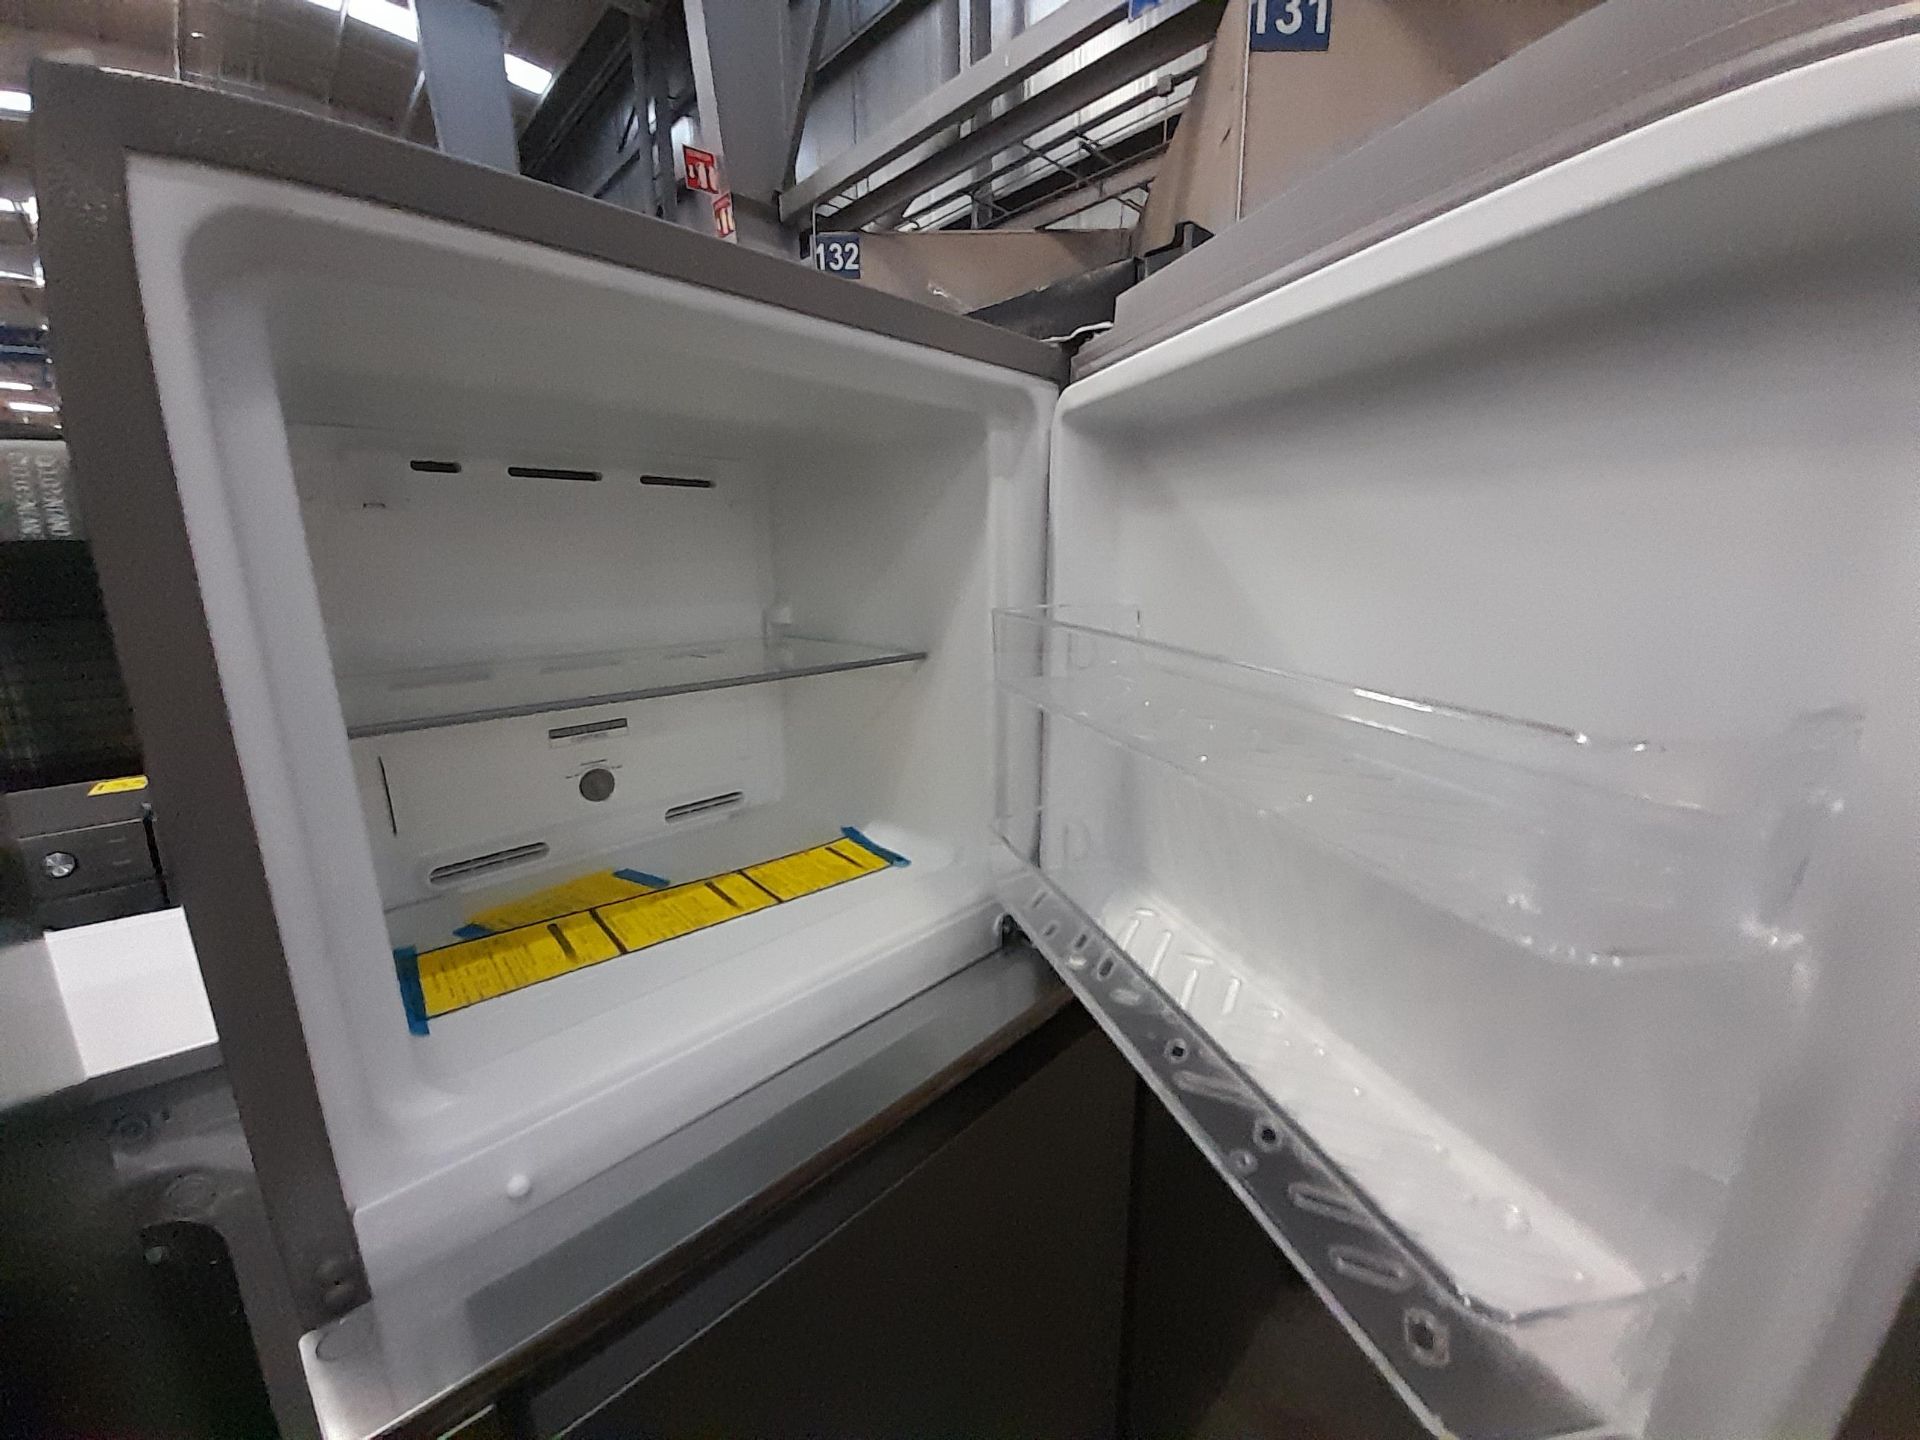 Lote de 2 refrigeradores contiene: 1 refrigerador Marca WHIRPOOL, Modelo WT1230K, Serie ND, Color G - Image 7 of 8